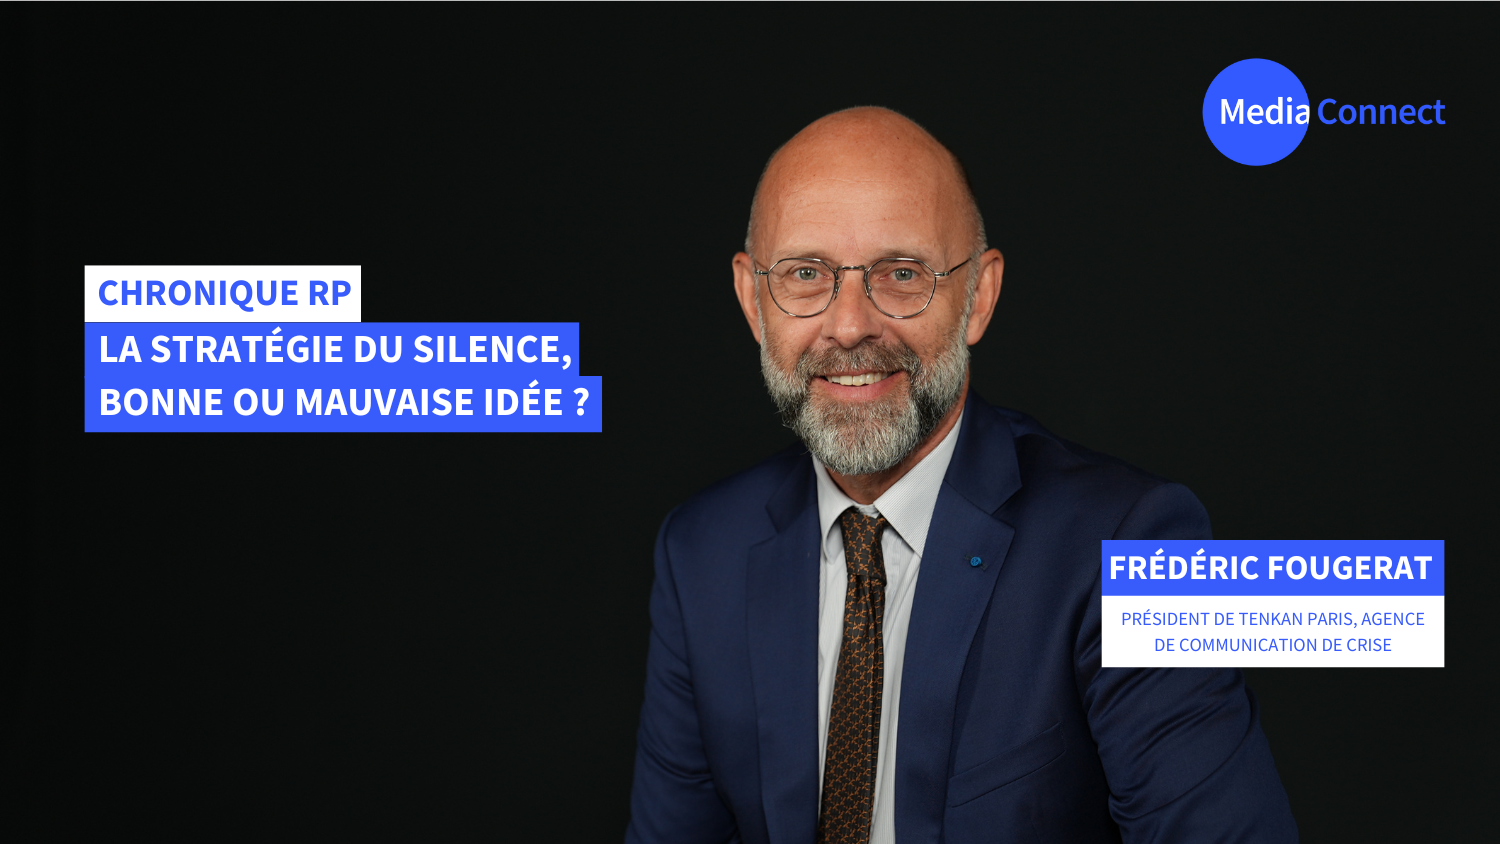 Chronique RP - Frédéric Fougerat X MediaConnect : la stratégie du silence en RP, bonne ou mauvaise idée ? [Vidéo]